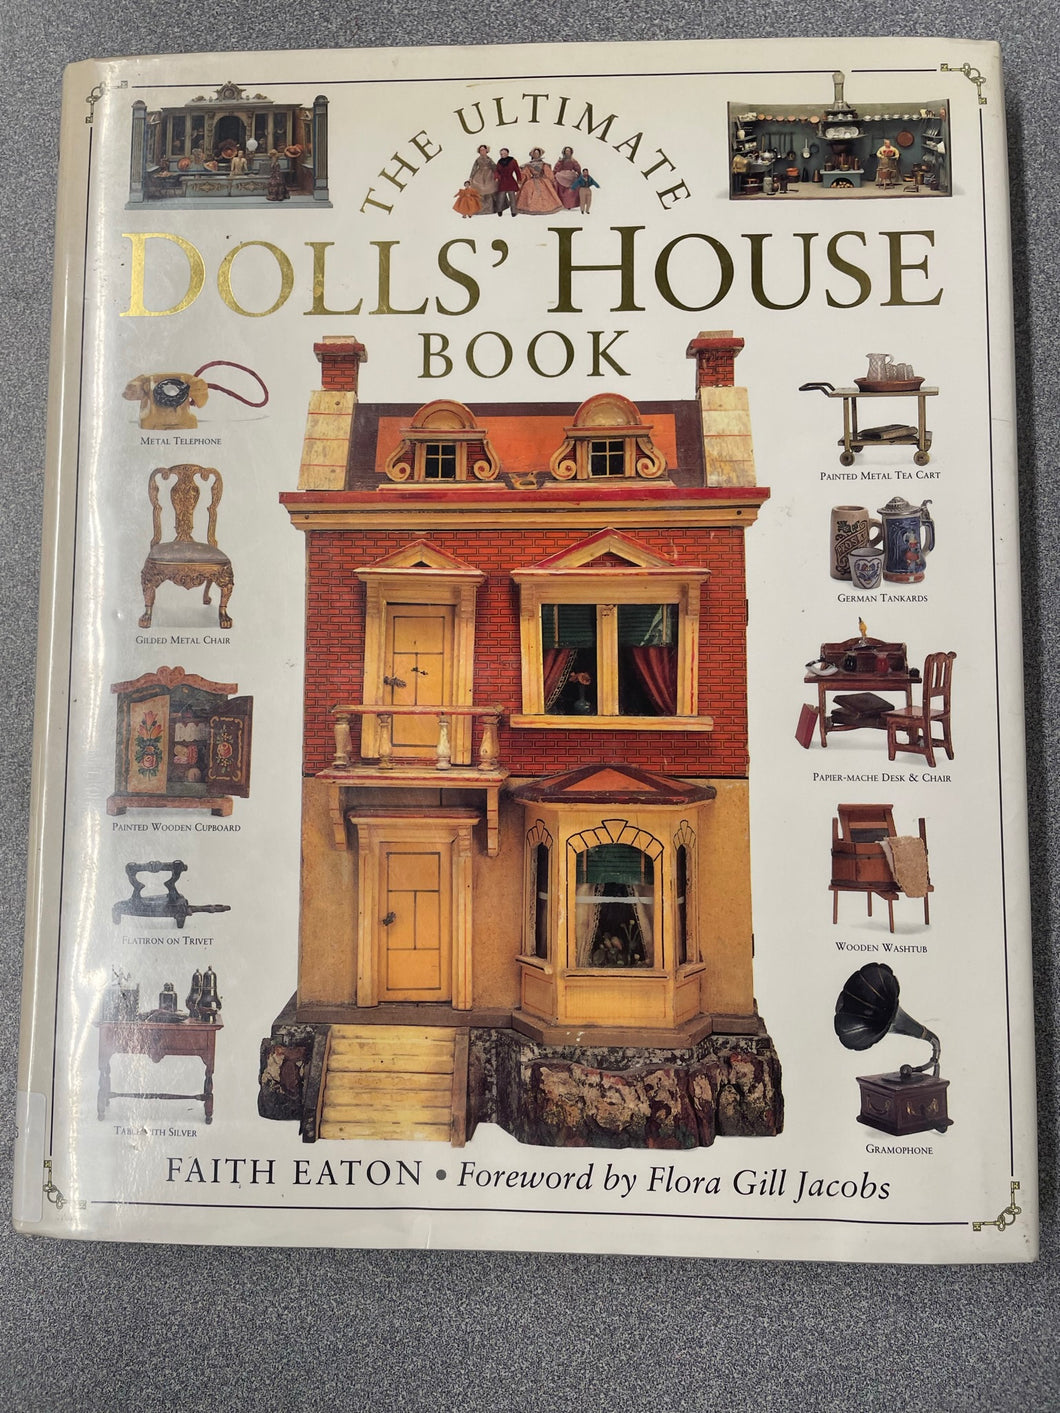 The Ultimate Dolls' House Book, Eaton, Faith [1994] CG 8/23